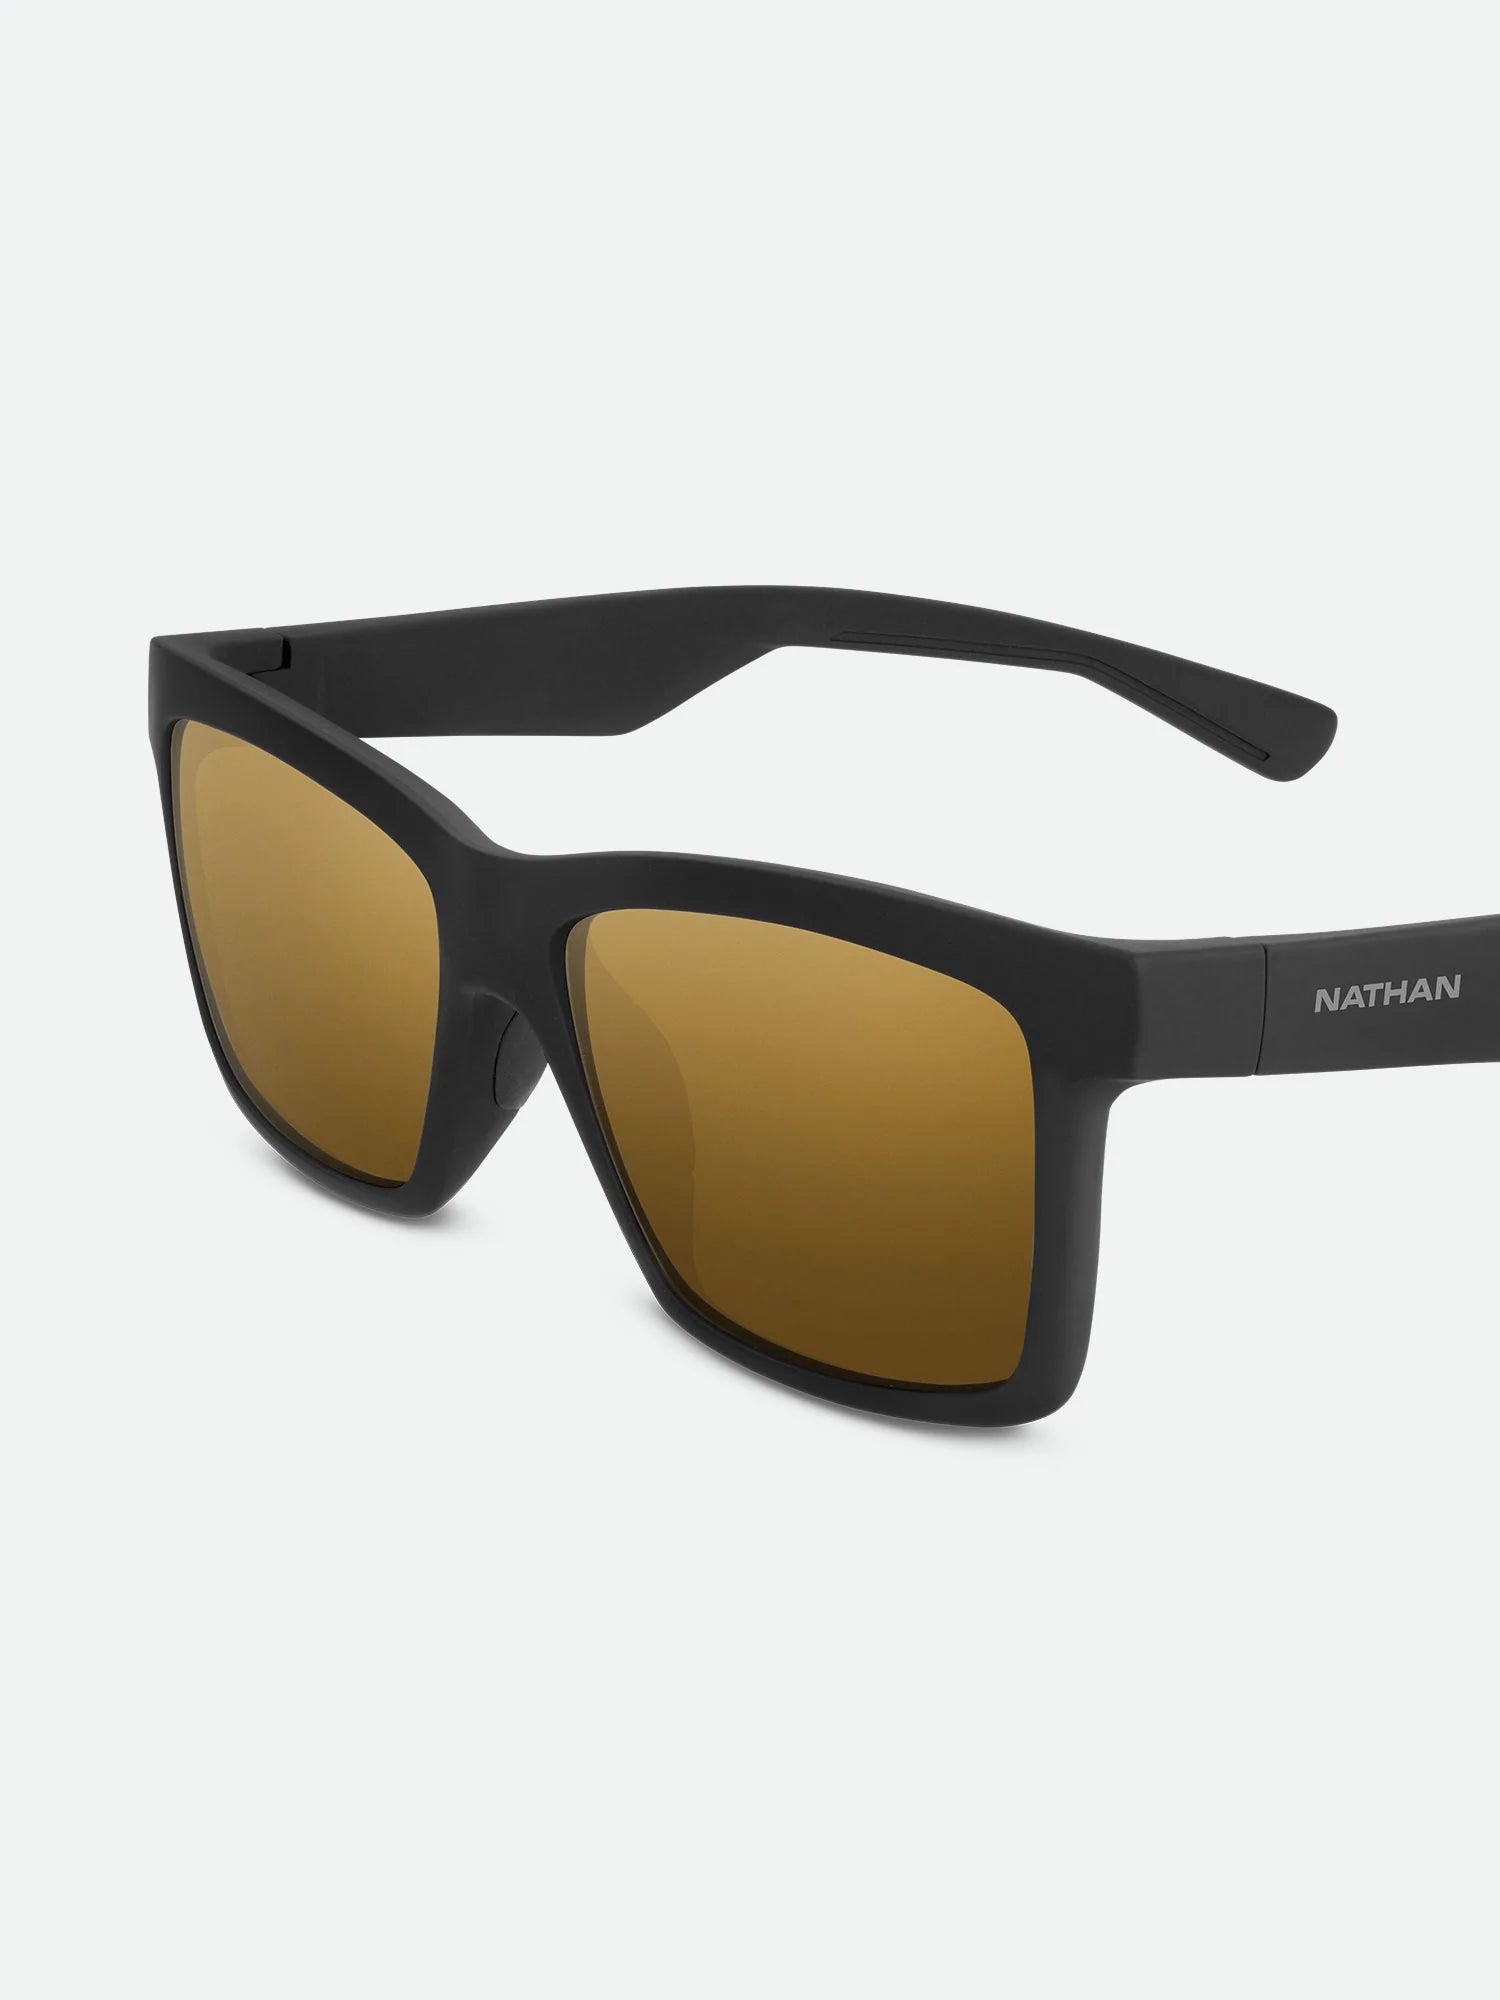 แว่นดําใส่วิ่ง | Adventure Polarized Sunglasses